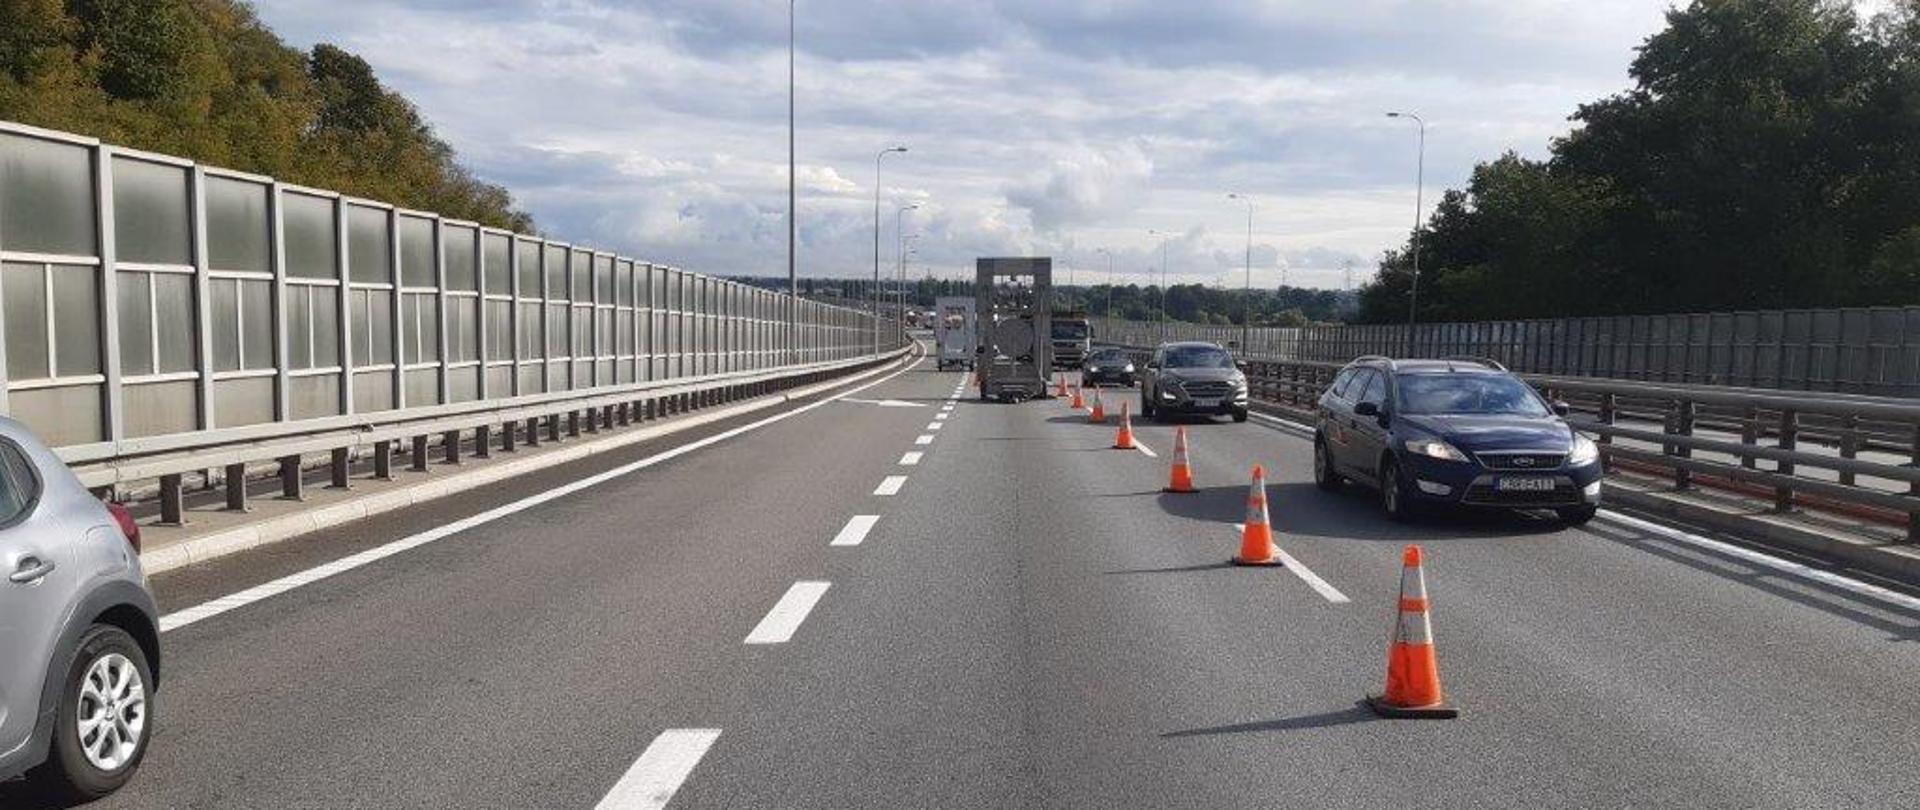 Widok na drogę ekspresową S7 - Południowa obwodnica Gdańska. Widoczne zwężenie jezdni, ustawione pachołki i znak ostrzegający o zwężeniu. Samochody są kierowane na skrajny lewy pas w kierunku obwodnicy Trójmiasta.